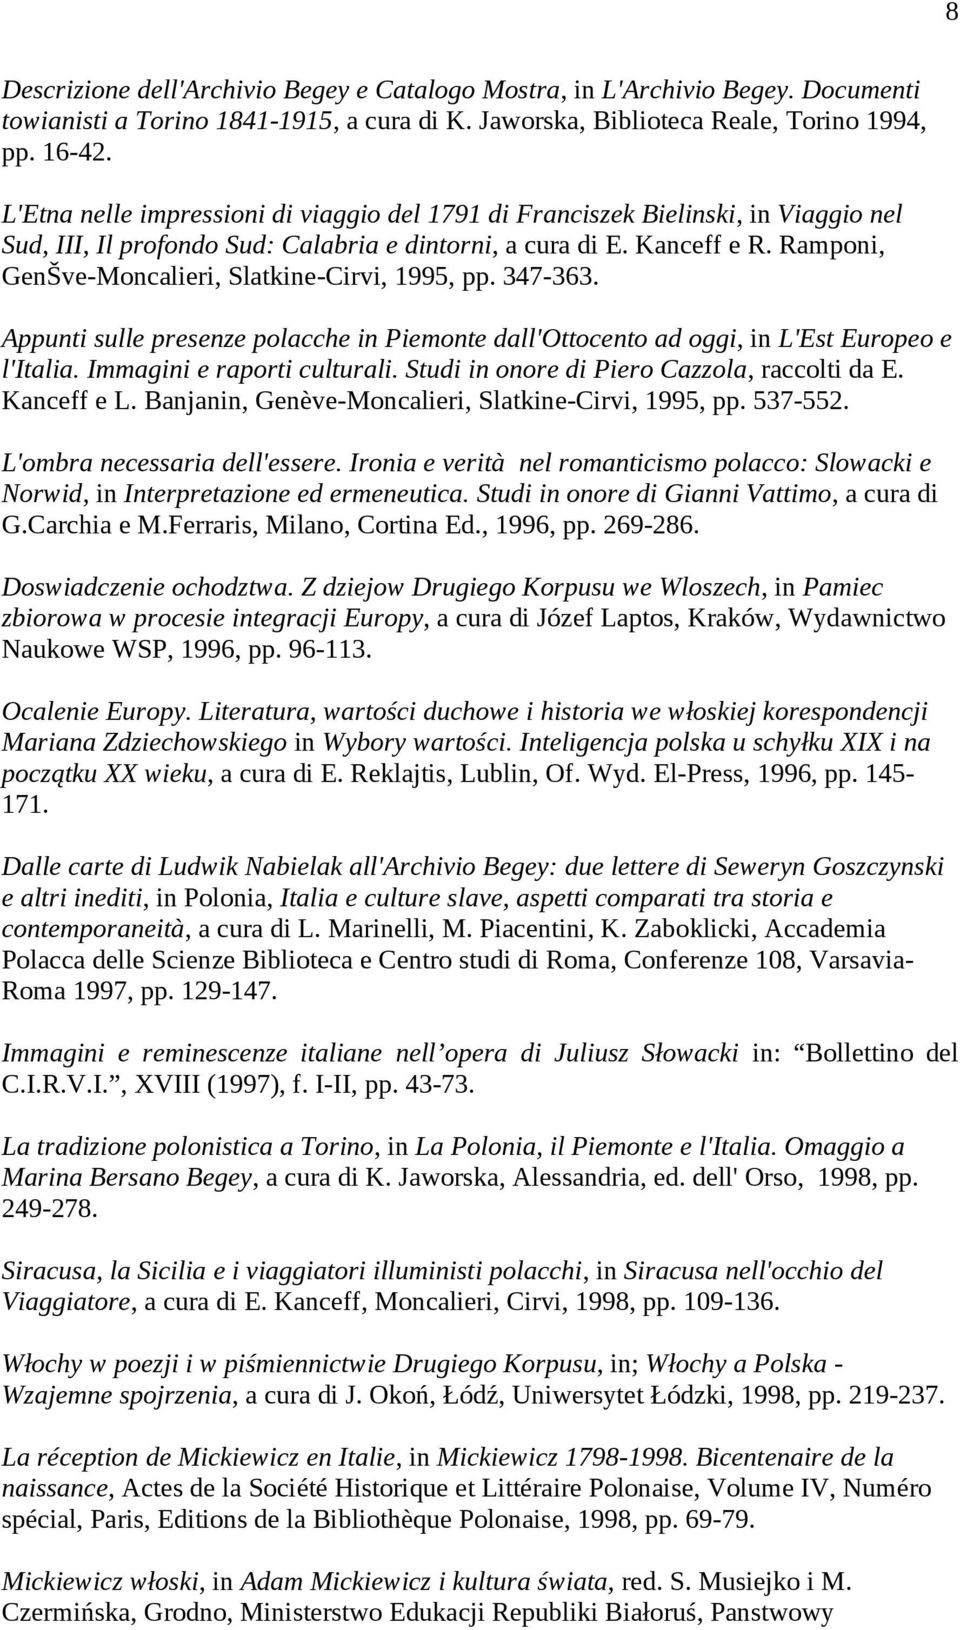 Ramponi, GenŠve-Moncalieri, Slatkine-Cirvi, 1995, pp. 347-363. Appunti sulle presenze polacche in Piemonte dall'ottocento ad oggi, in L'Est Europeo e l'italia. Immagini e raporti culturali.